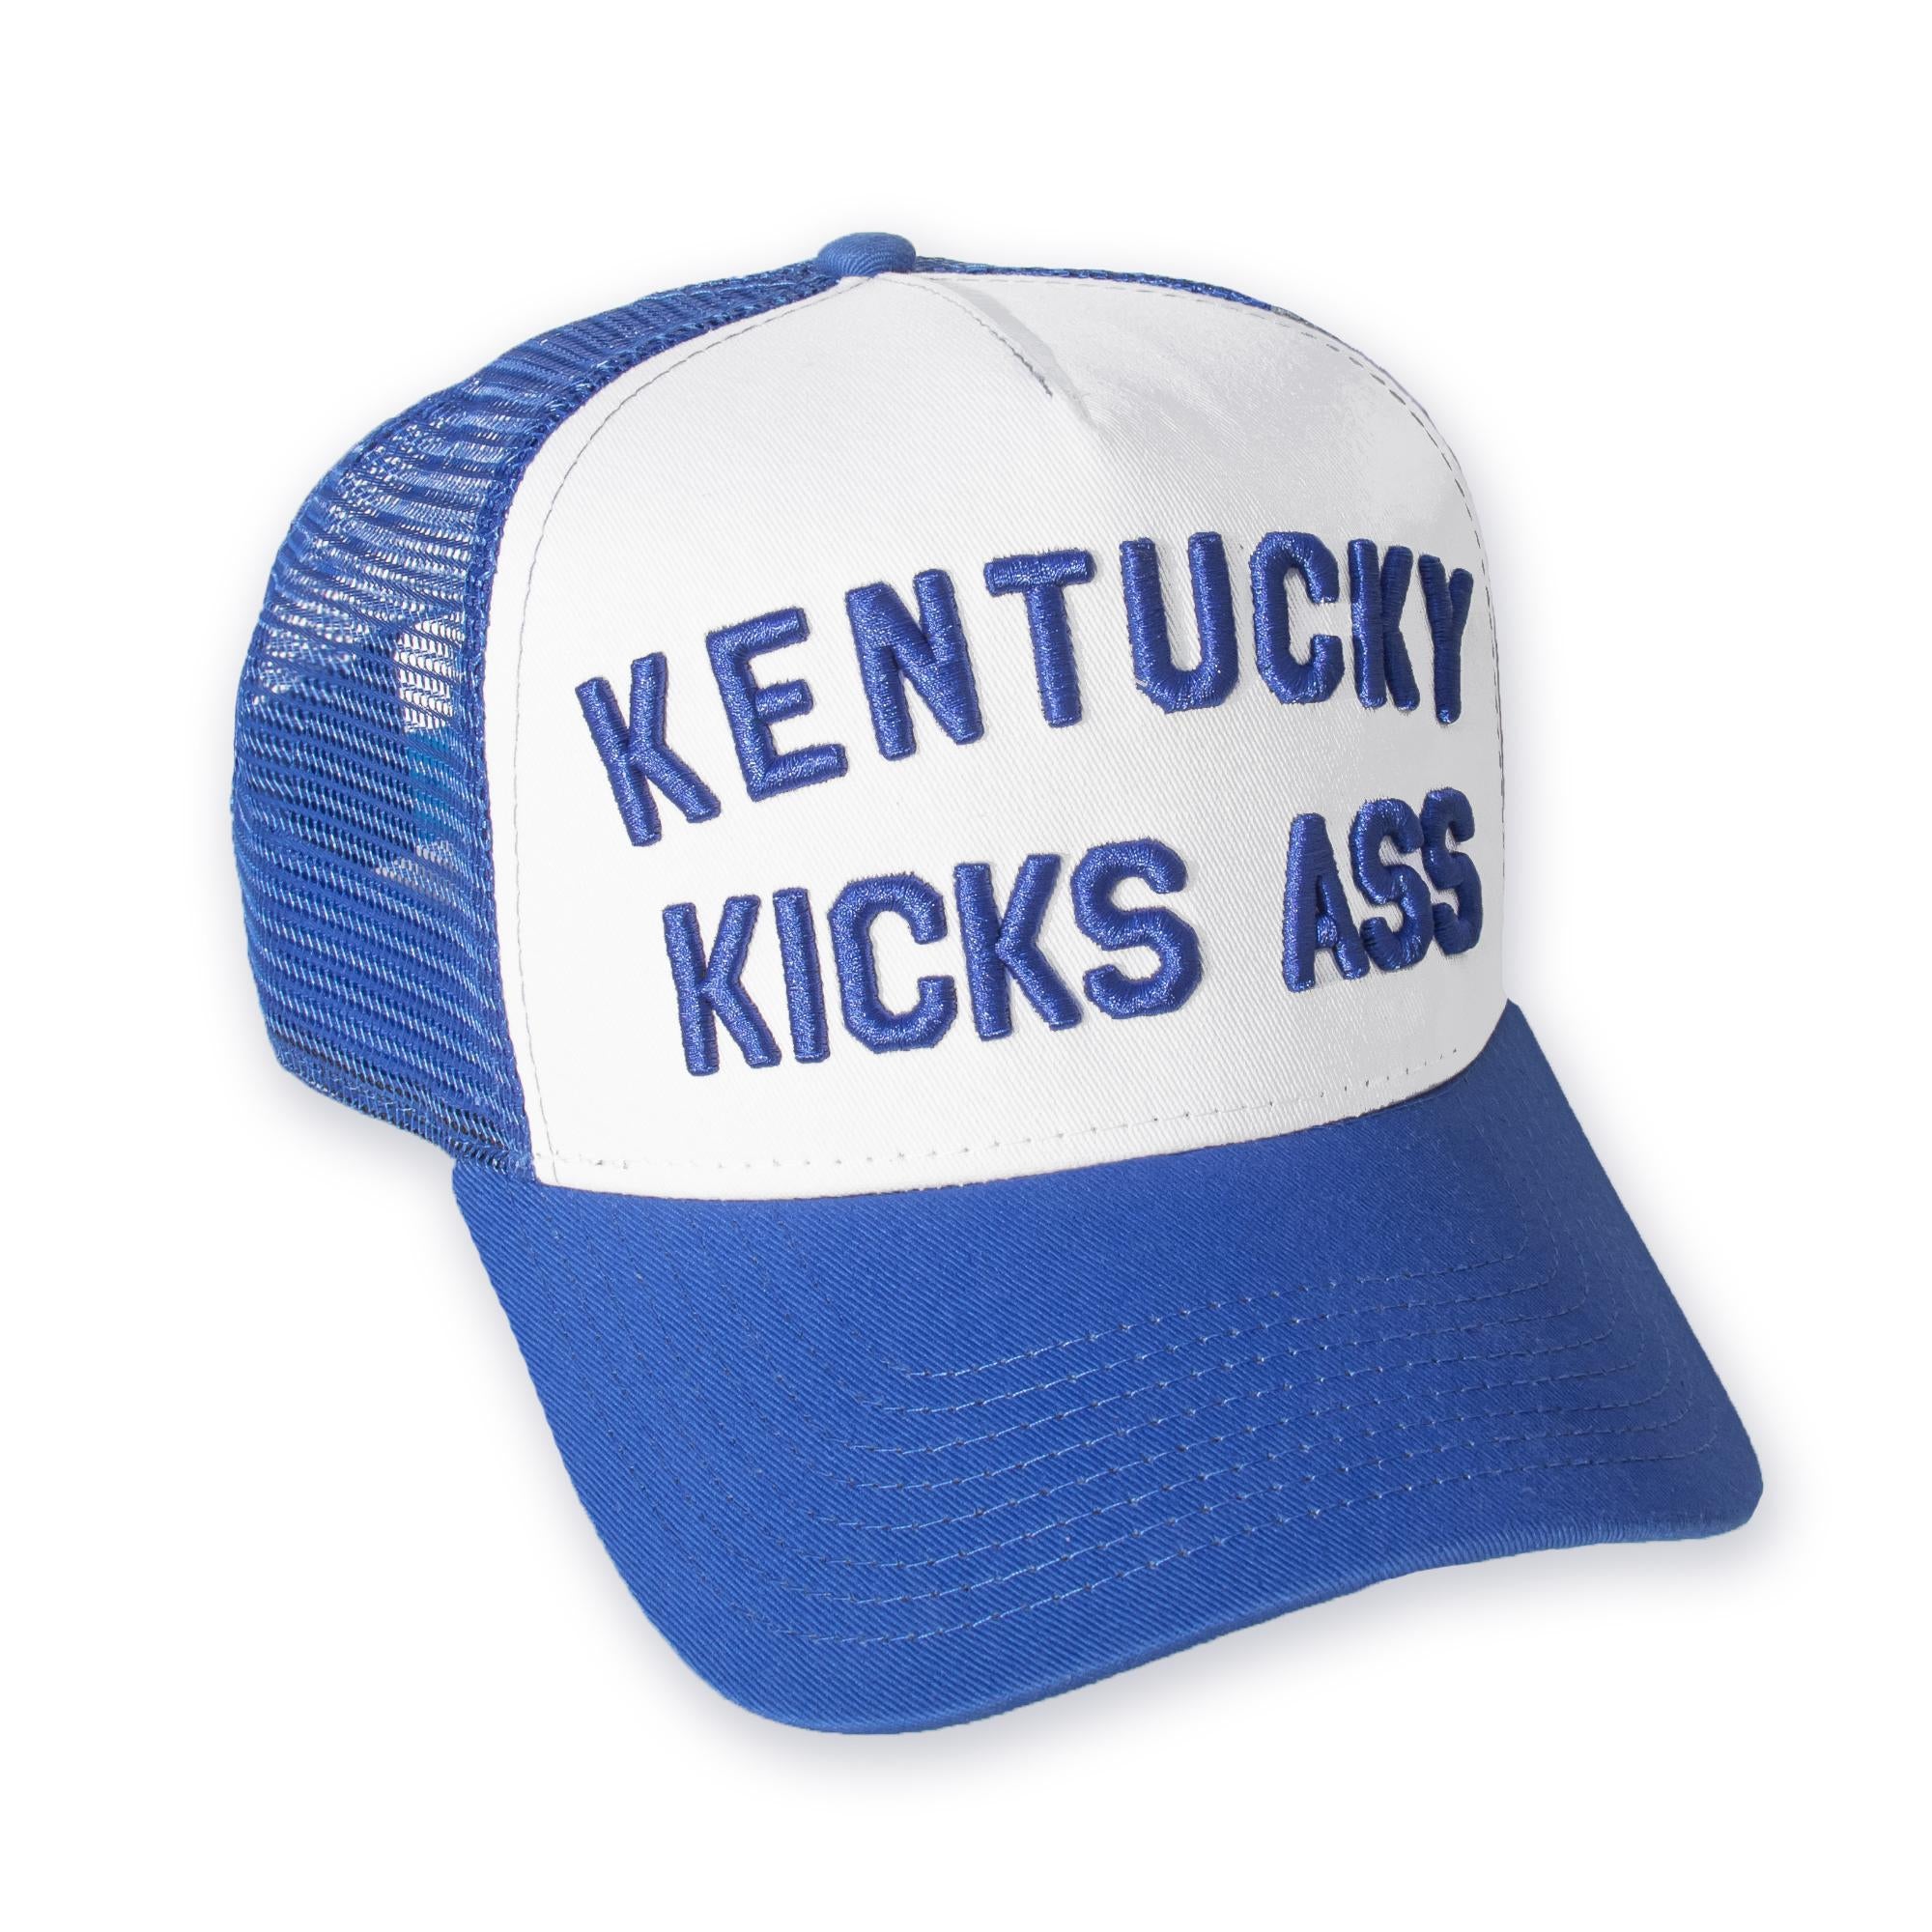 Kentucky Kicks Ass Trucker Hat (Royal)-Hat-KY for KY Store